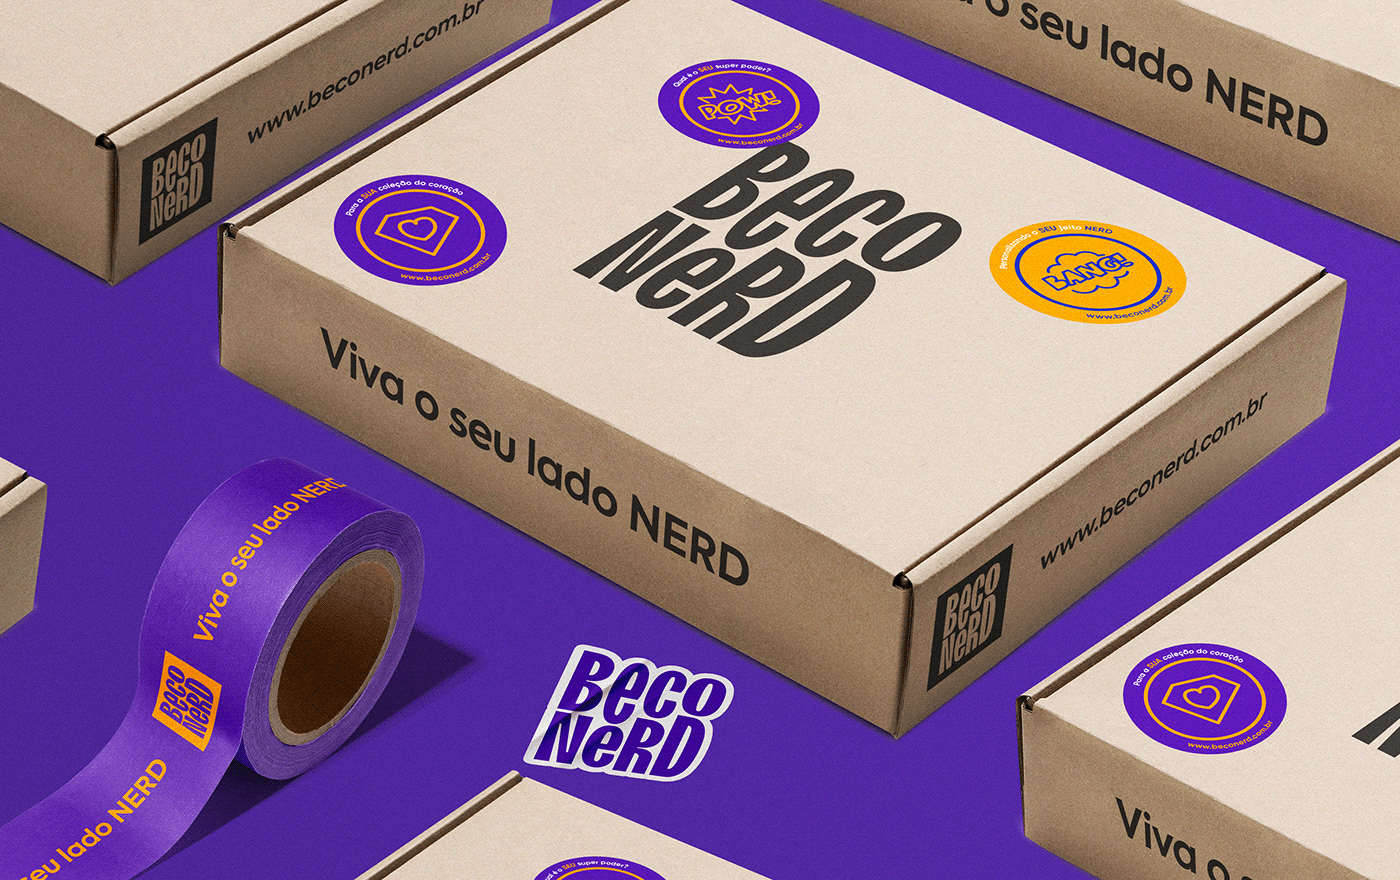 geek nerd heroes universe package Kraft stickers